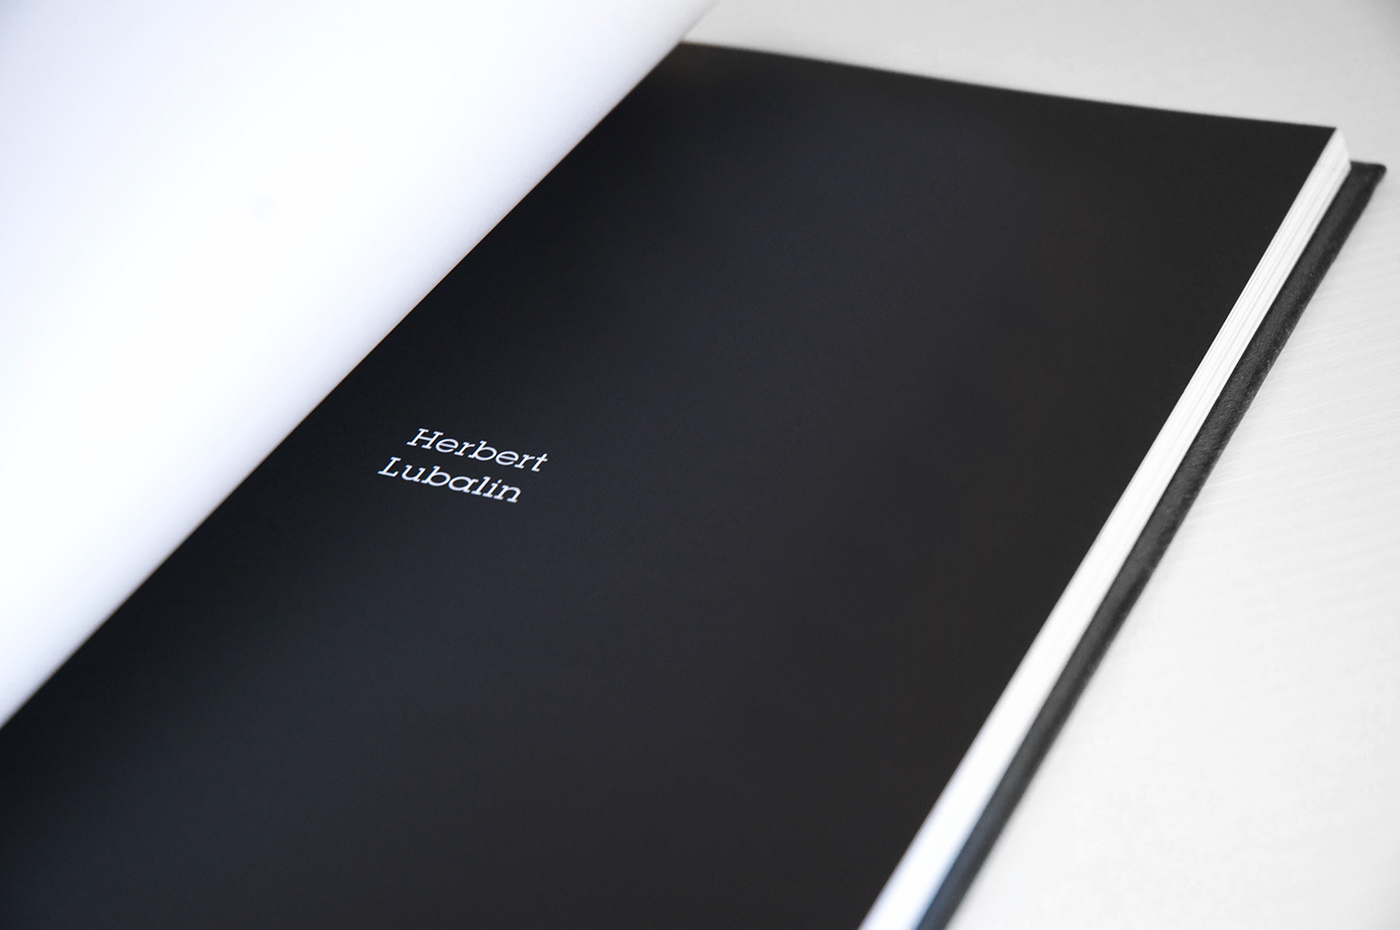 editorial design lubalin graphic book Herb black White creative impagination